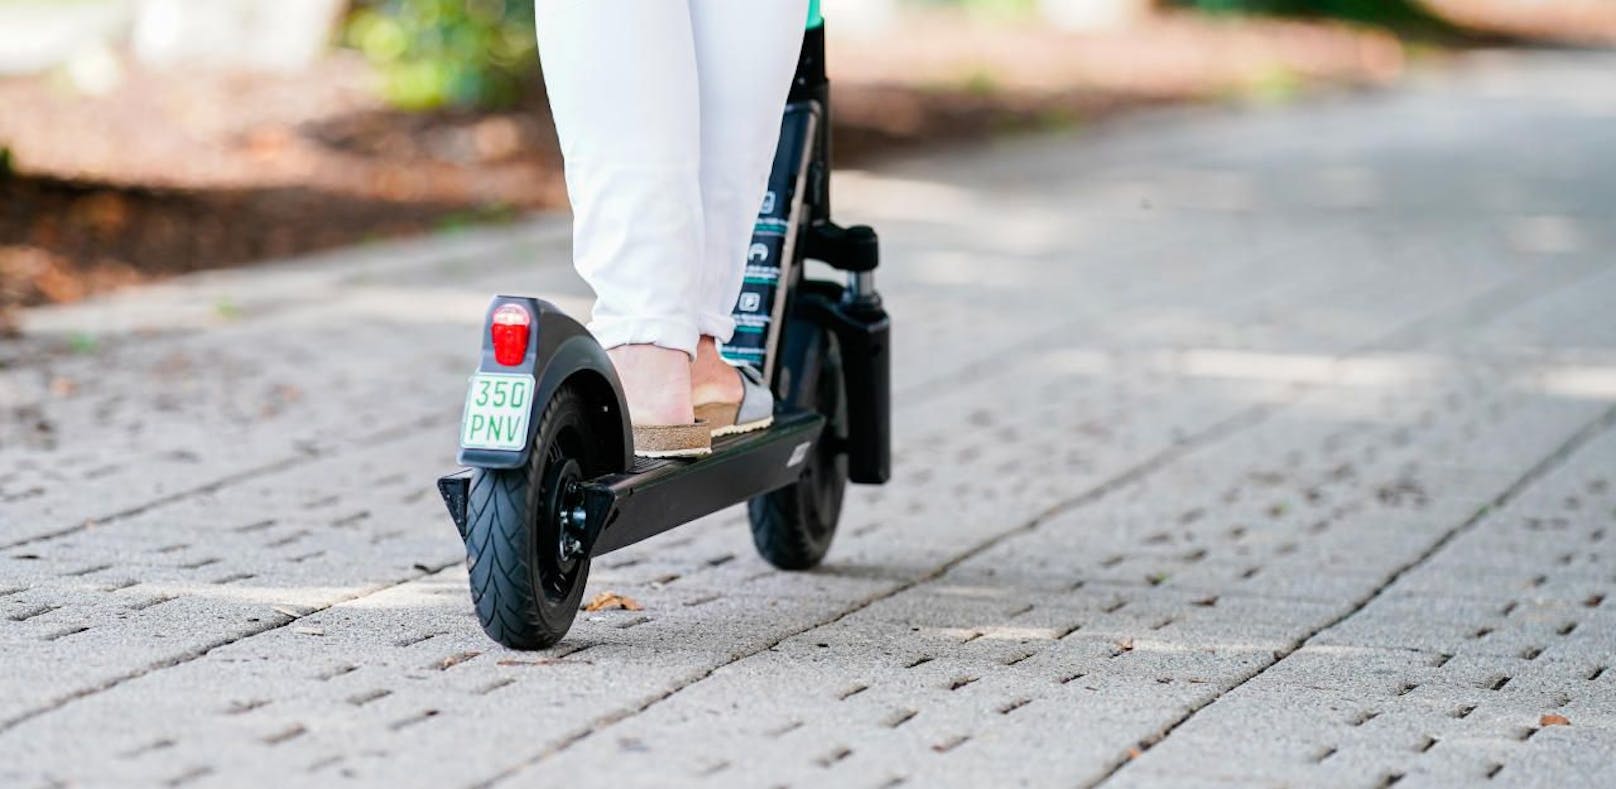 Die neuen Regeln für E-Scooter in der Stadt sollen noch in diesem Jahr präsentiert werden. Dabei soll es unter anderem um die Abstellproblematik gehen.